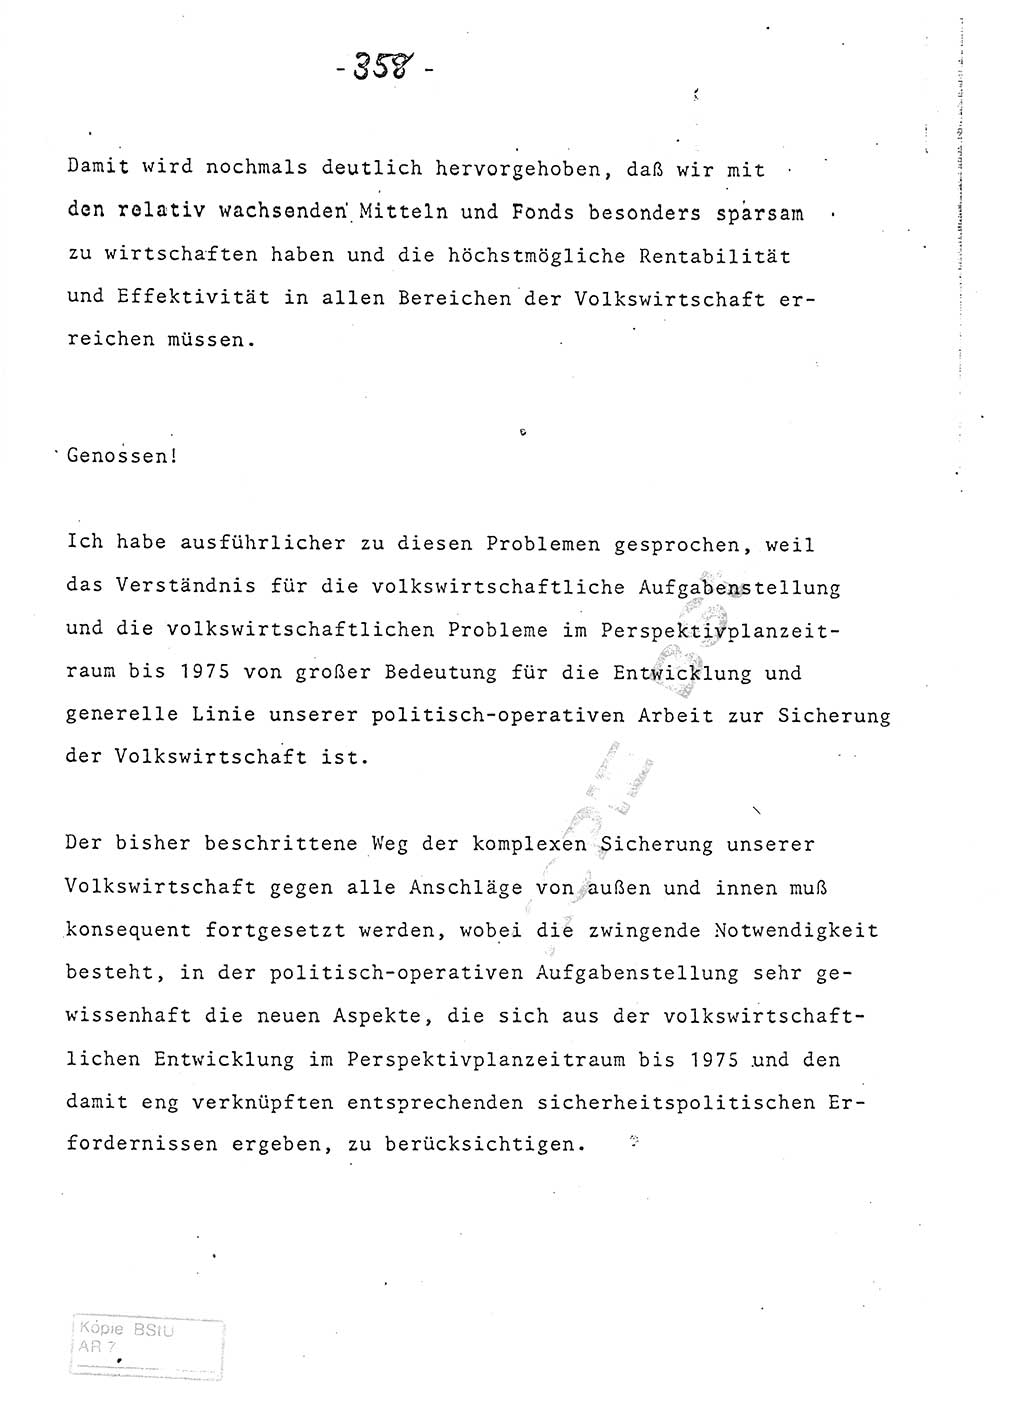 Referat (Entwurf) des Genossen Minister (Generaloberst Erich Mielke) auf der Dienstkonferenz 1972, Ministerium für Staatssicherheit (MfS) [Deutsche Demokratische Republik (DDR)], Der Minister, Geheime Verschlußsache (GVS) 008-150/72, Berlin 25.2.1972, Seite 358 (Ref. Entw. DK MfS DDR Min. GVS 008-150/72 1972, S. 358)